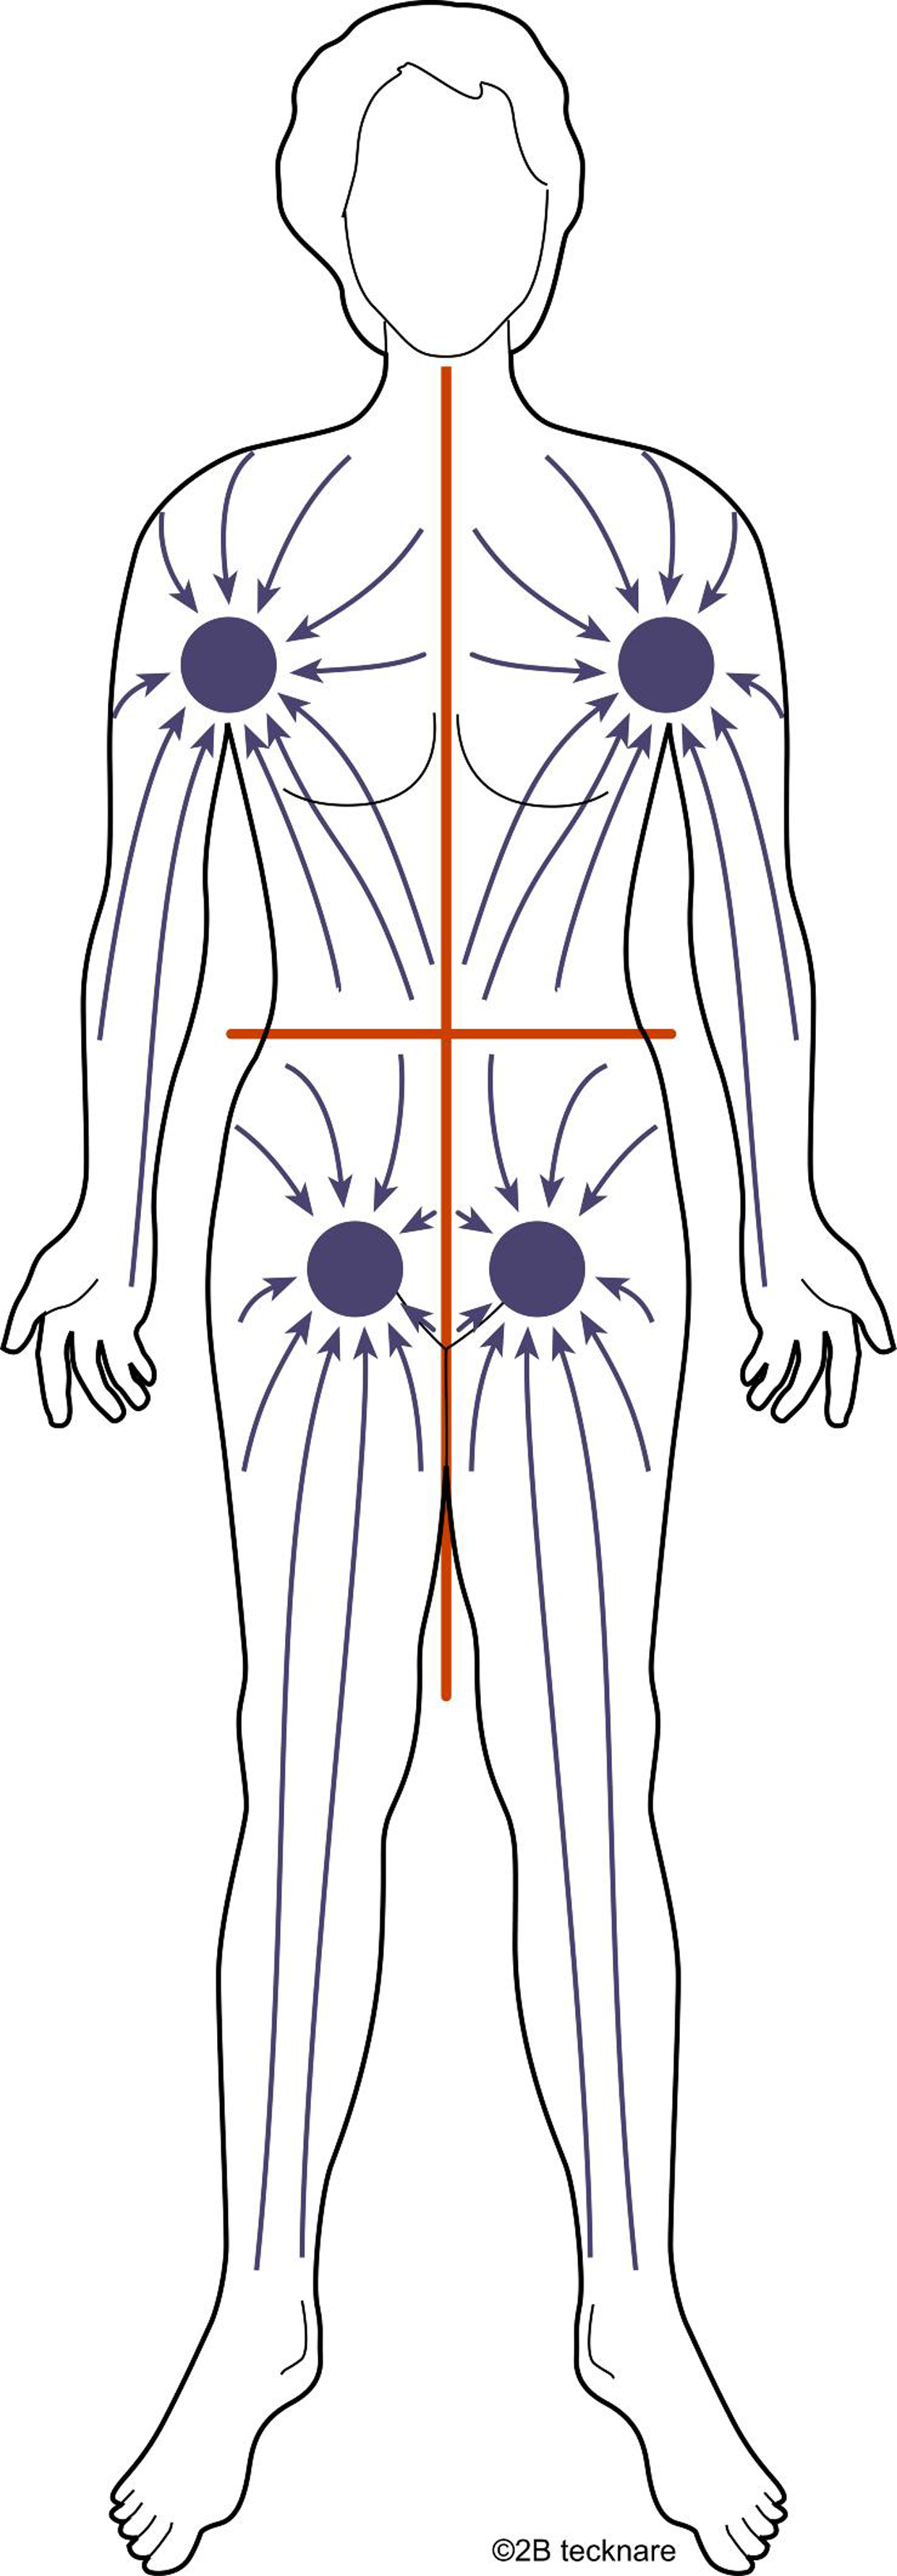 Bild som visar kroppens lymfatiska kvadranter